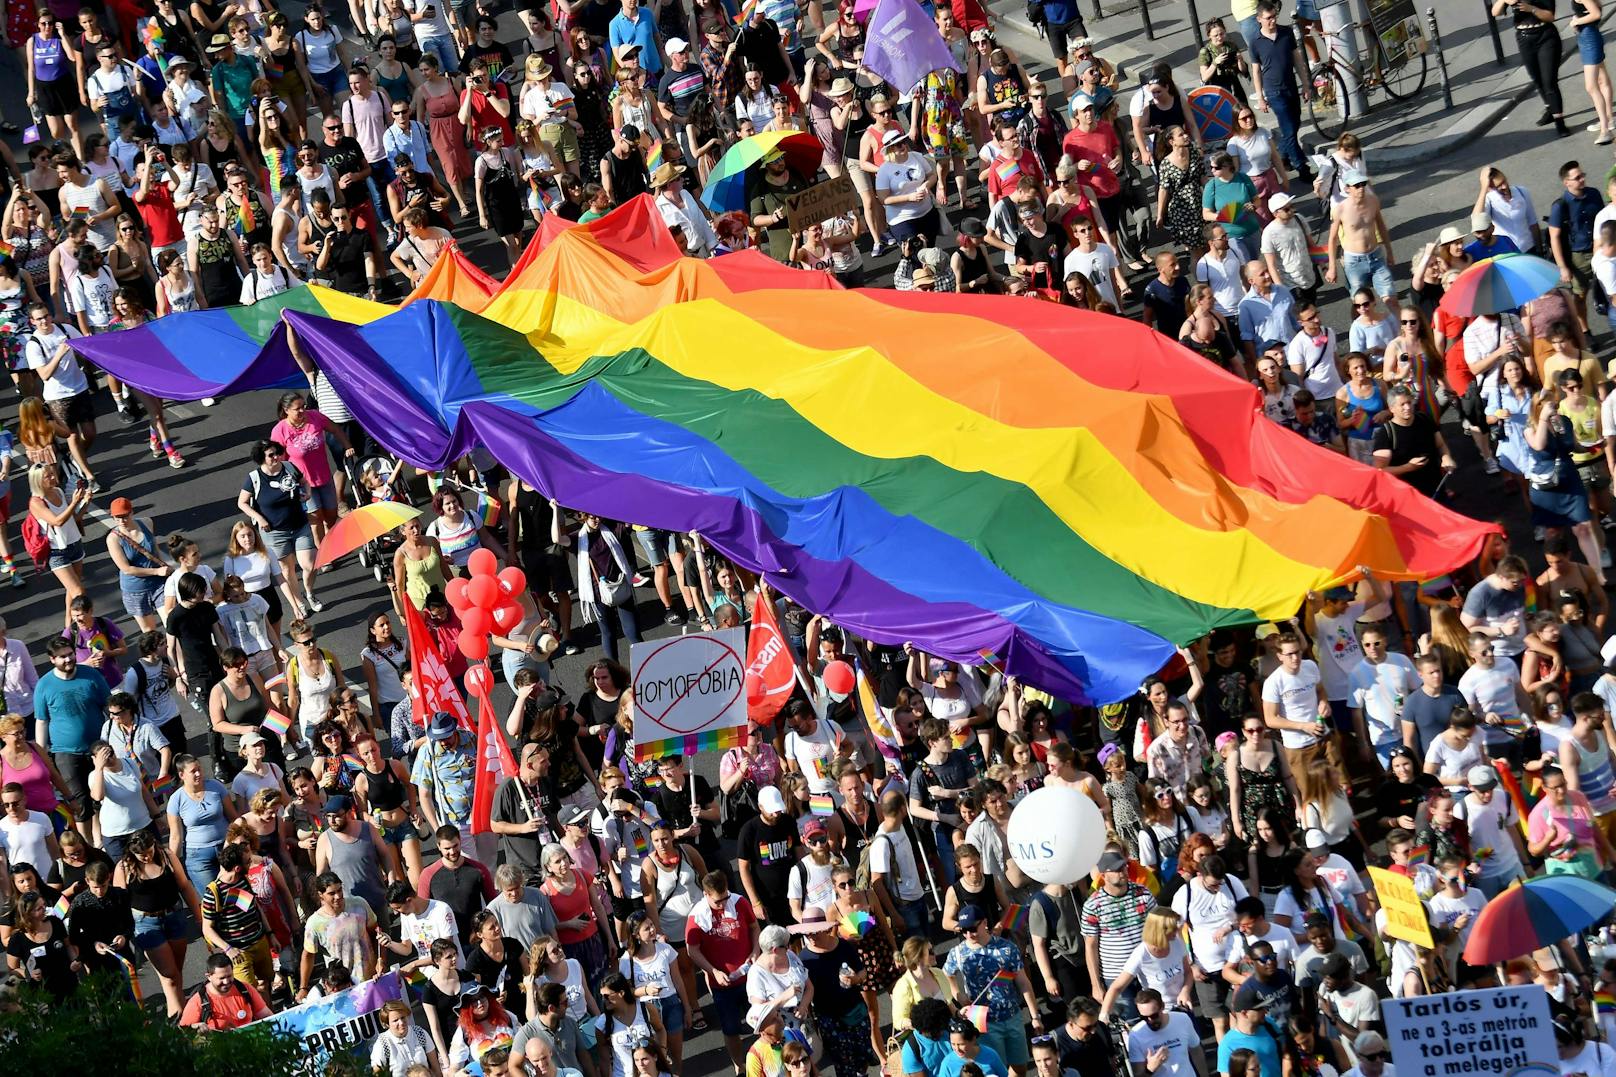 Am Donnerstag (08.07.2021) tritt in Ungarn das umstrittene Gesetz zur Beschränkung der Information über Homo- und Transsexualität für Personen unter 18 Jahren in Kraft. Noch am Dienstag protestierten in der Hauptstadt Budapest mehrere Tausend Menschen dagegen.